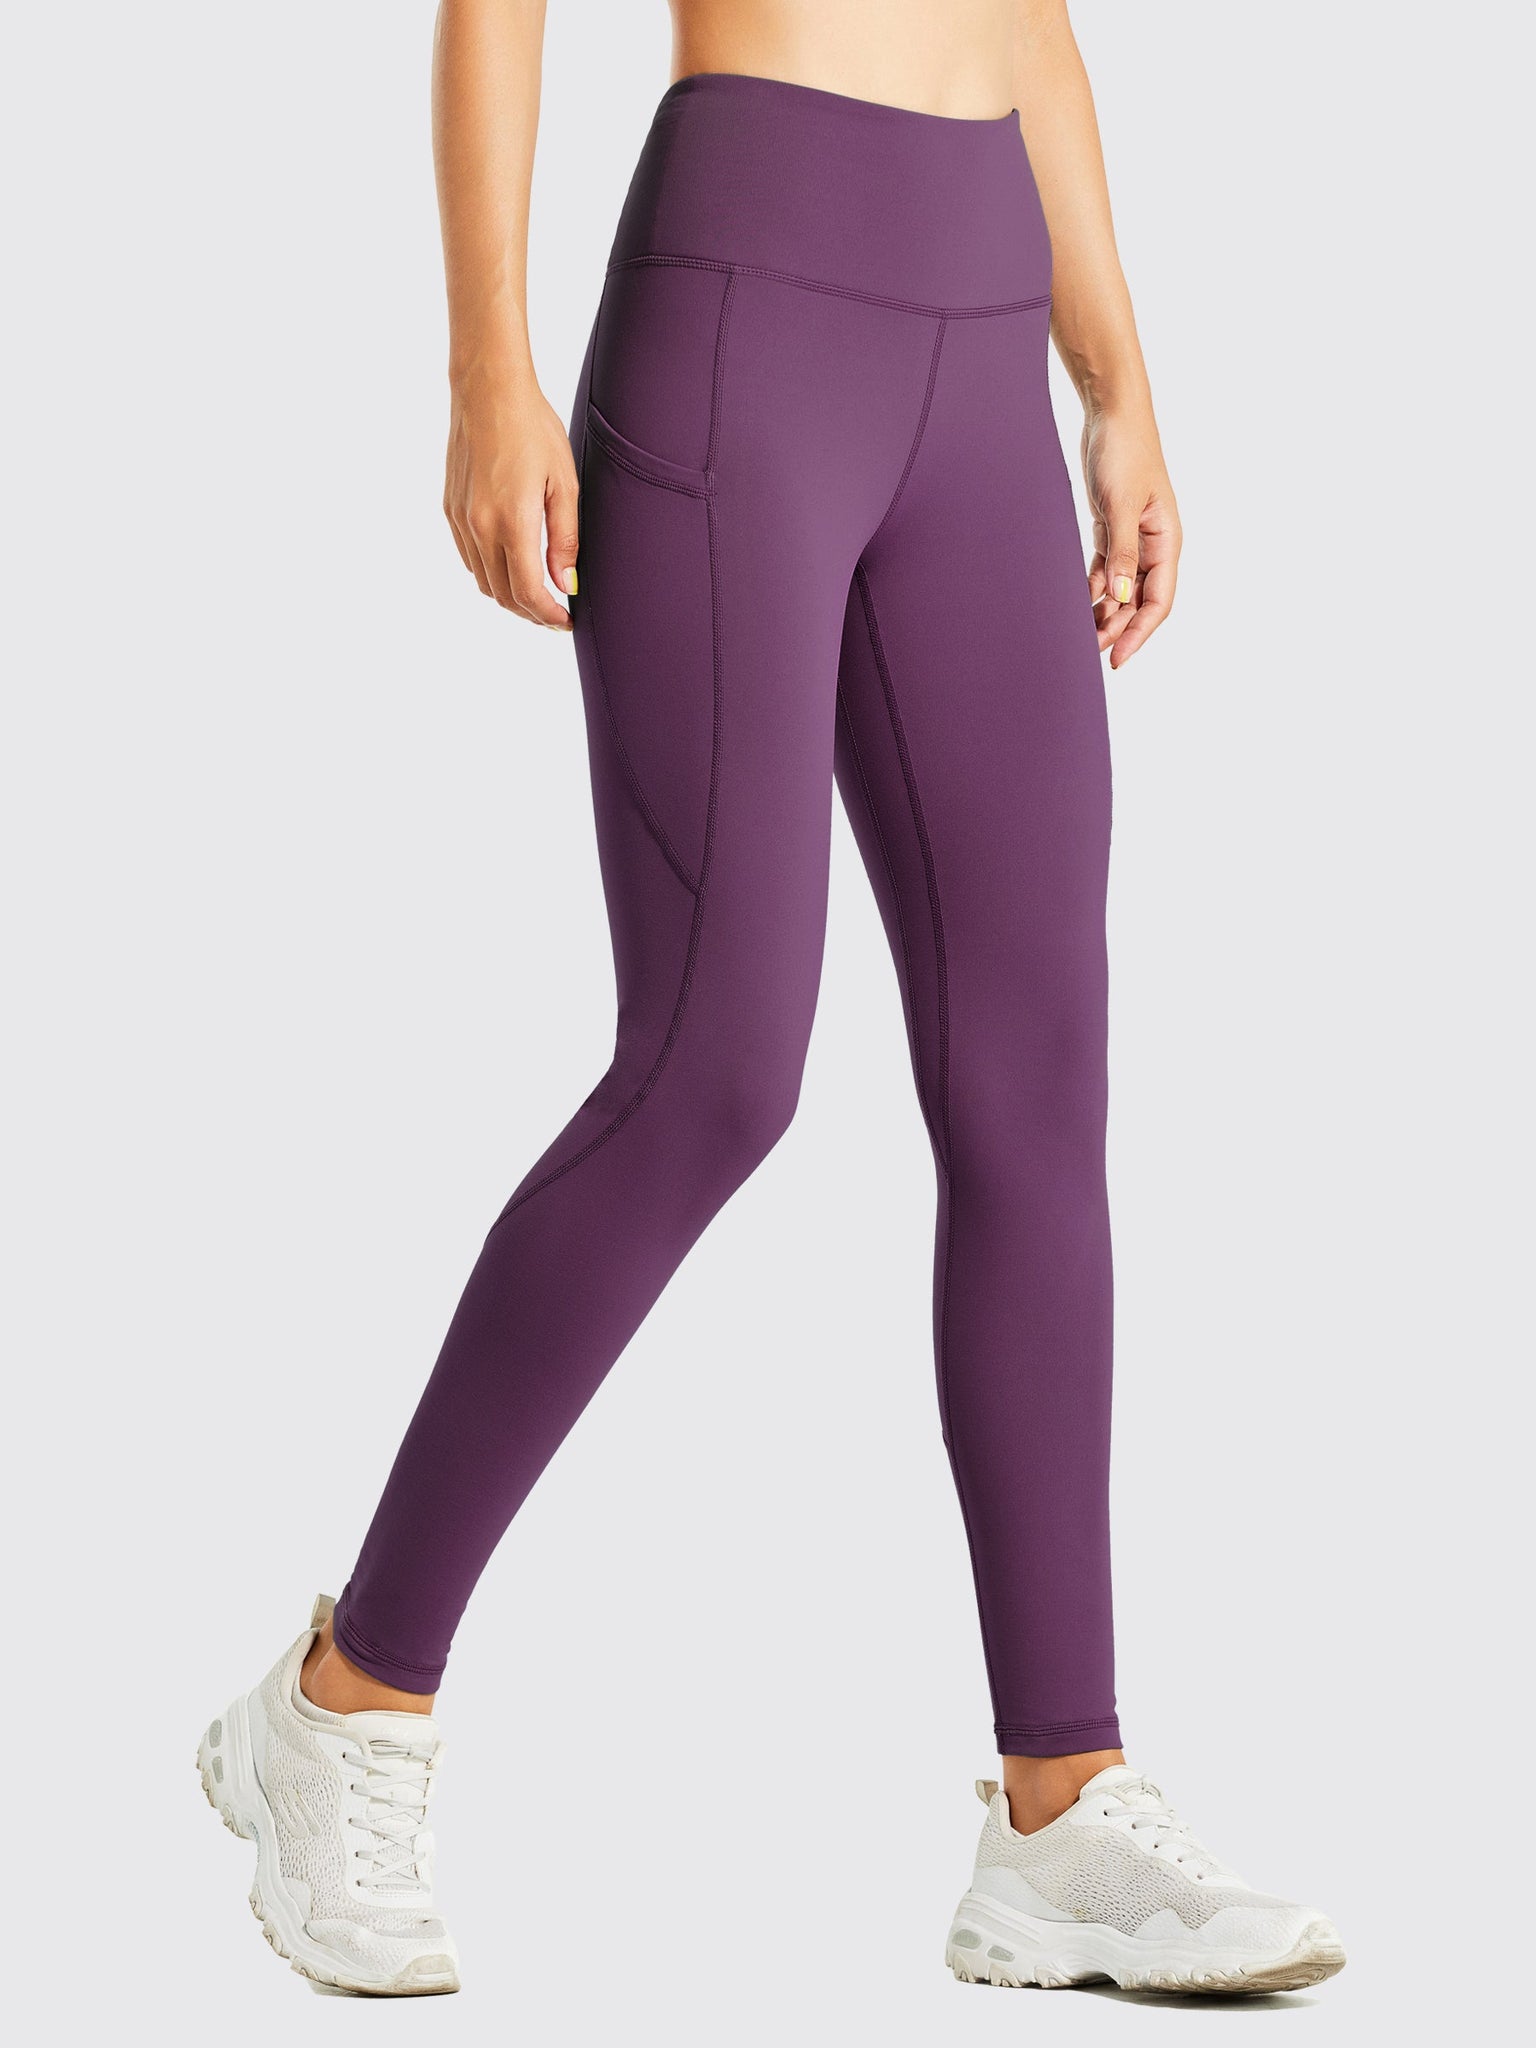 Women's Fleece Lined Leggings_Purple_model2